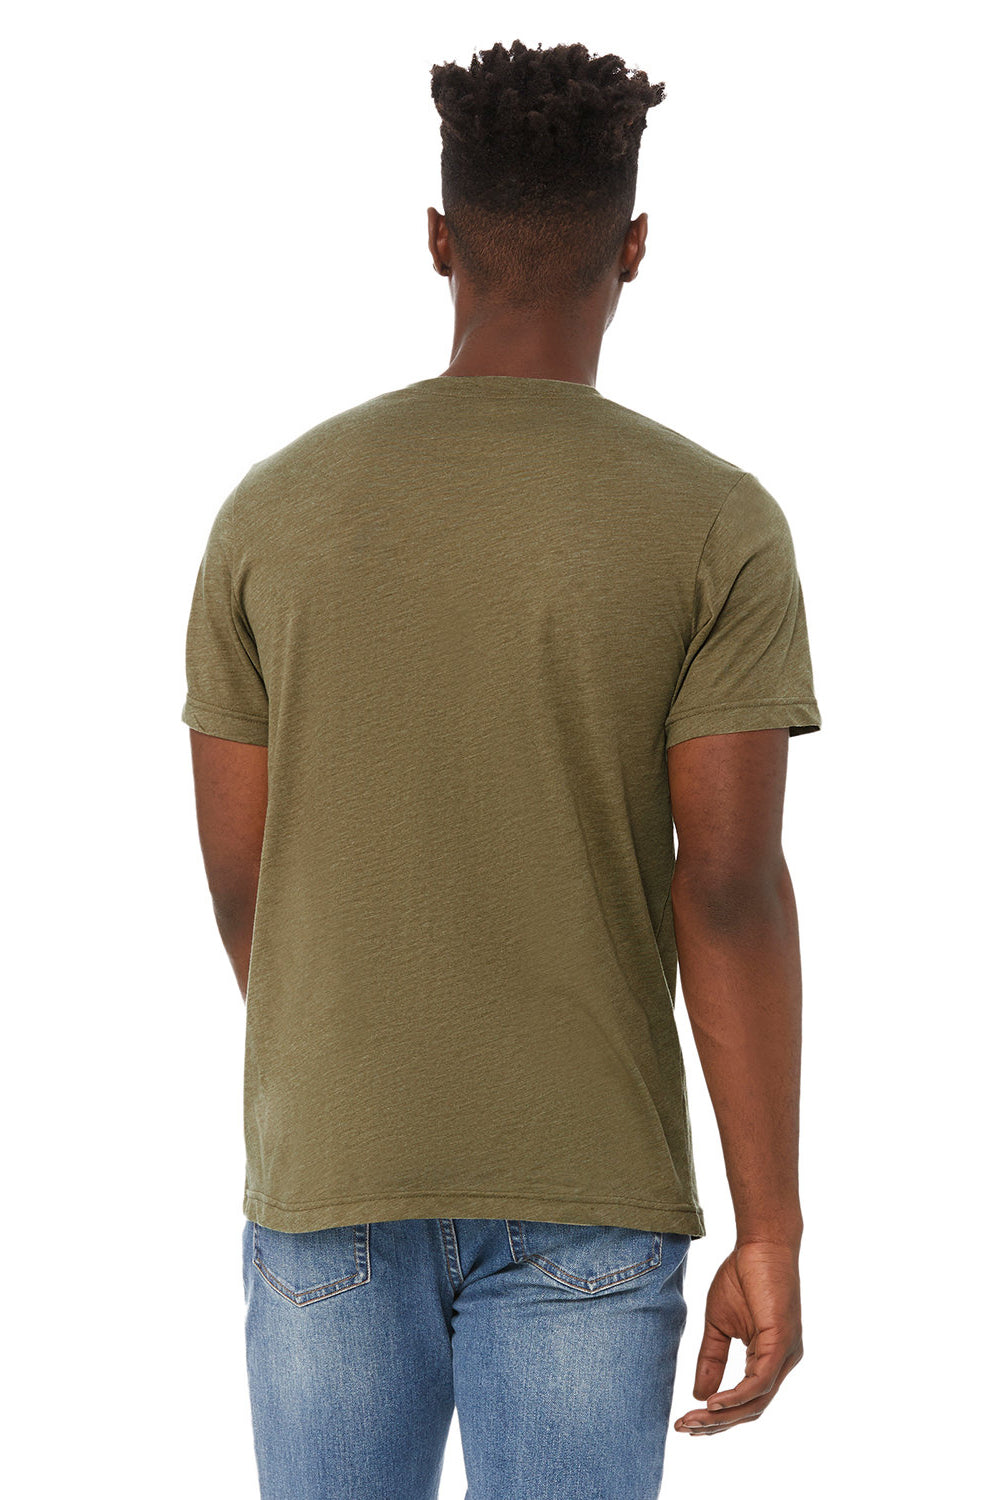 Bella + Canvas BC3415/3415C/3415 Mens Short Sleeve V-Neck T-Shirt Olive Green Back